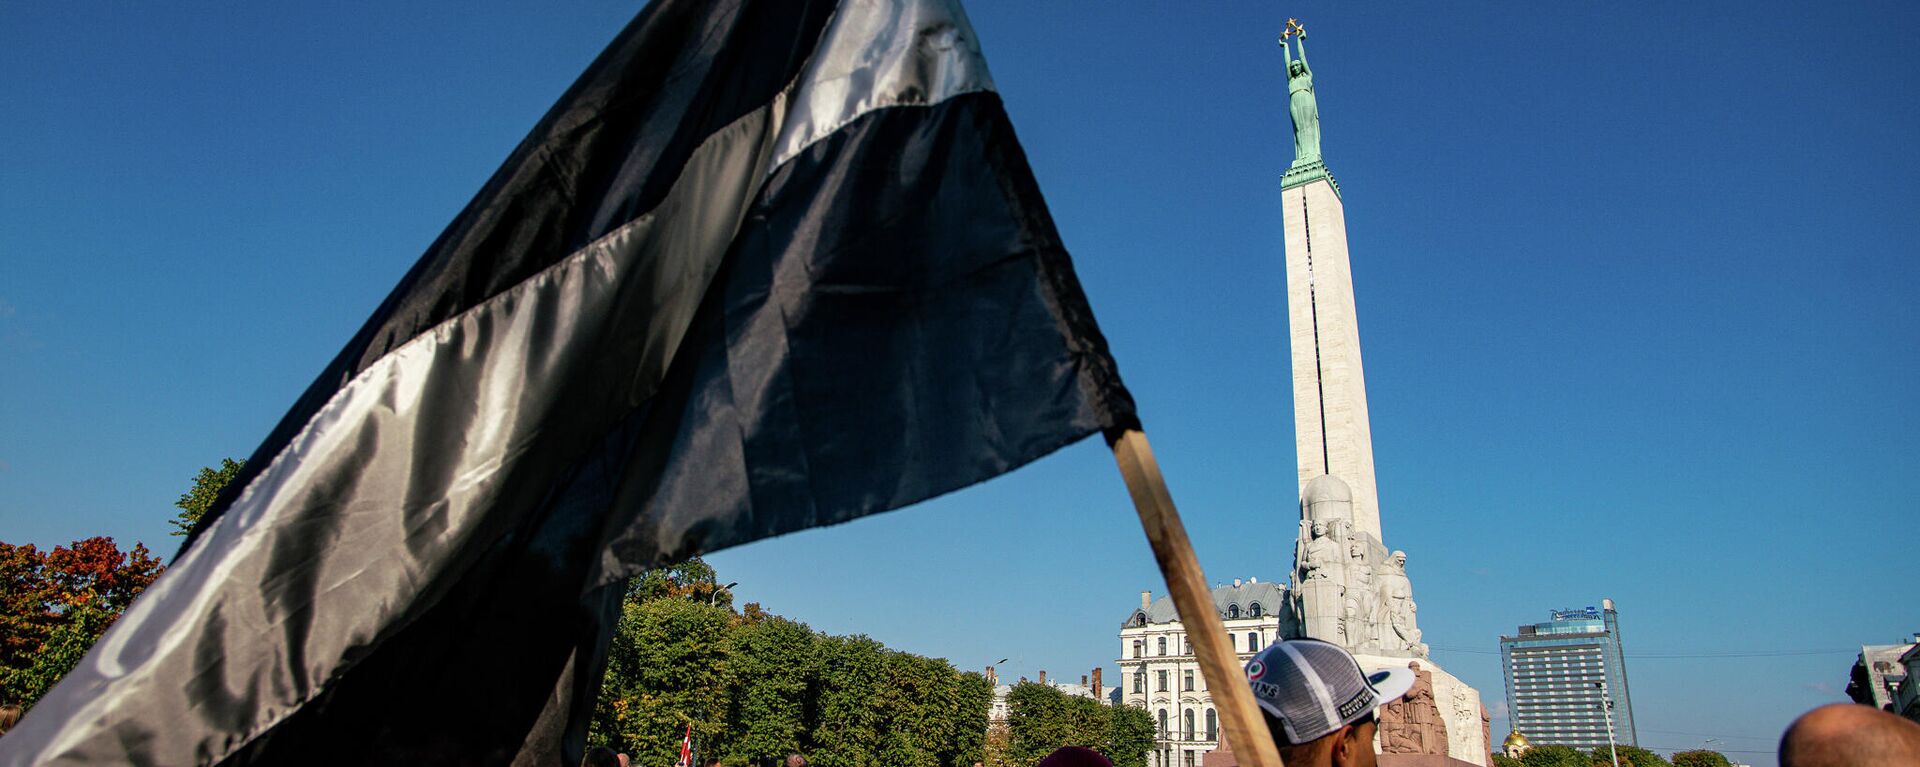 Латвийский флаг в черно-белом исполнении на митинге протеста у памятника Свободы - Sputnik Латвия, 1920, 03.10.2021